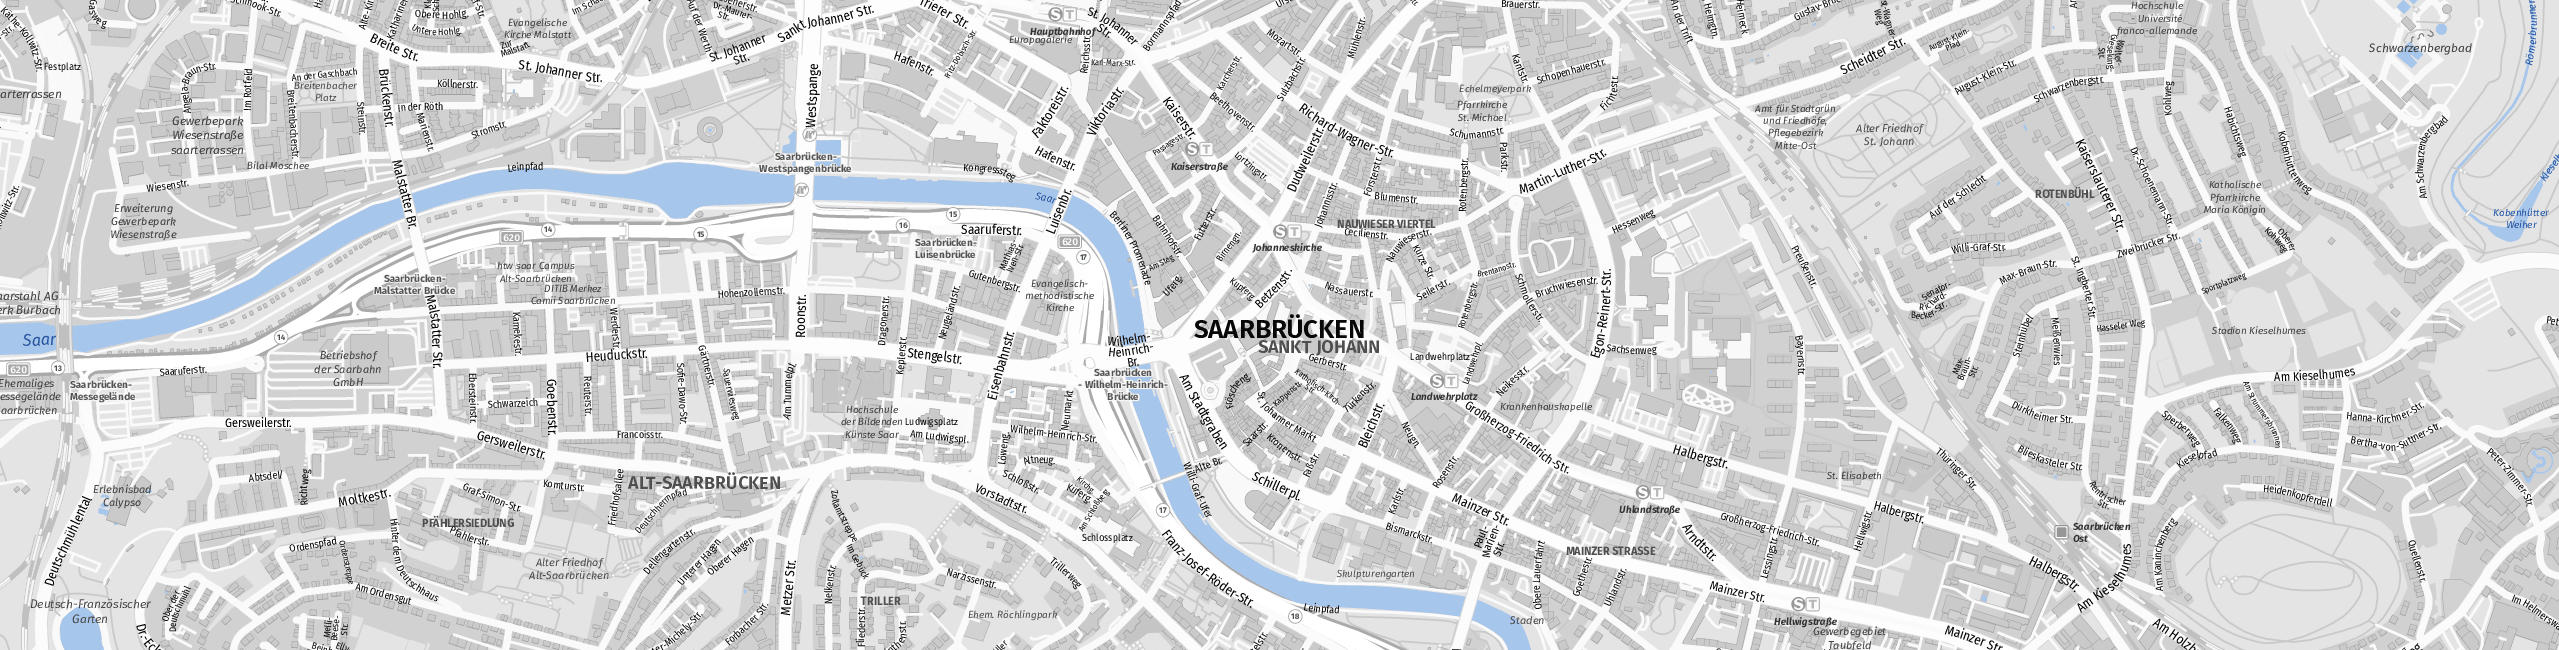 Stadtplan Saarbrücken zum Downloaden.